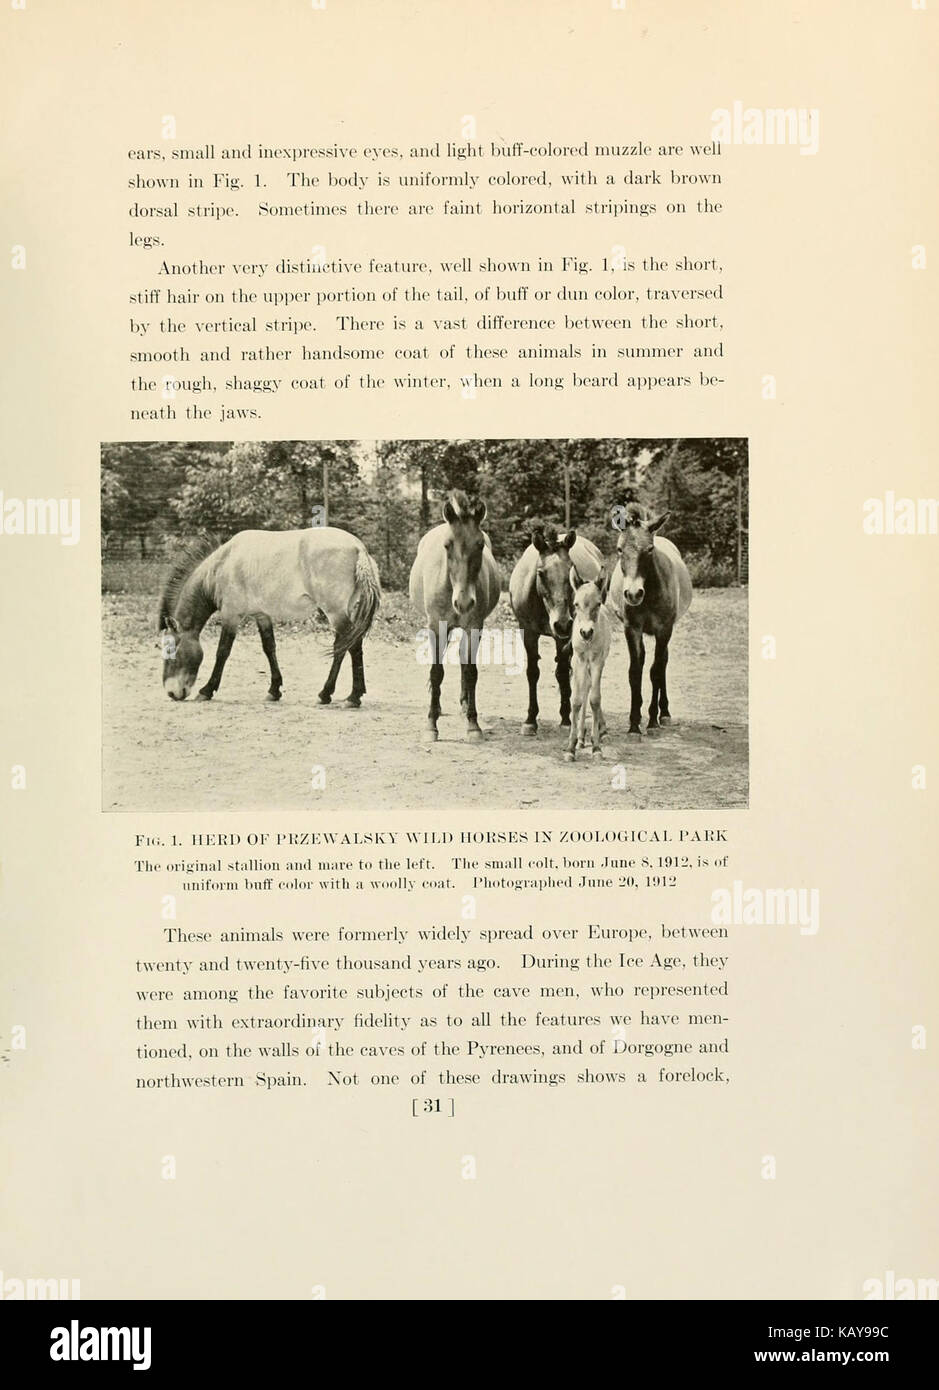 Il cavallo, del passato e del presente, al Museo Americano di Storia Naturale e il Parco Zoologico (pagina 31) BHL9388134 Foto Stock